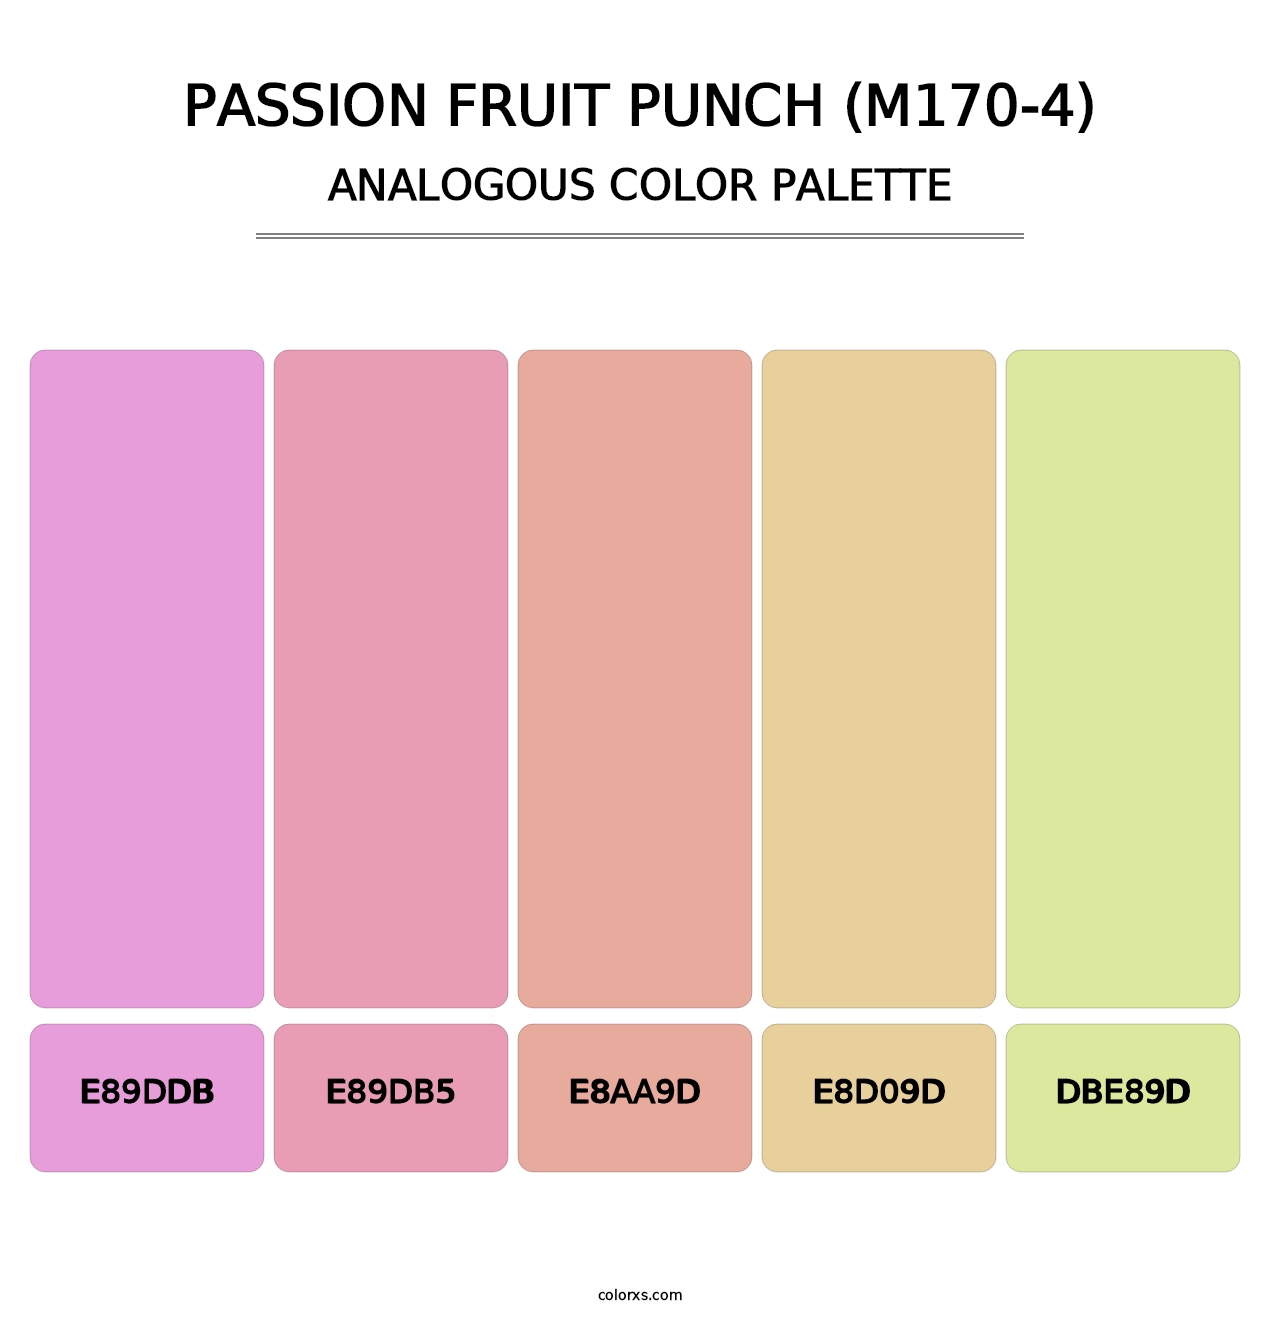 Passion Fruit Punch (M170-4) - Analogous Color Palette